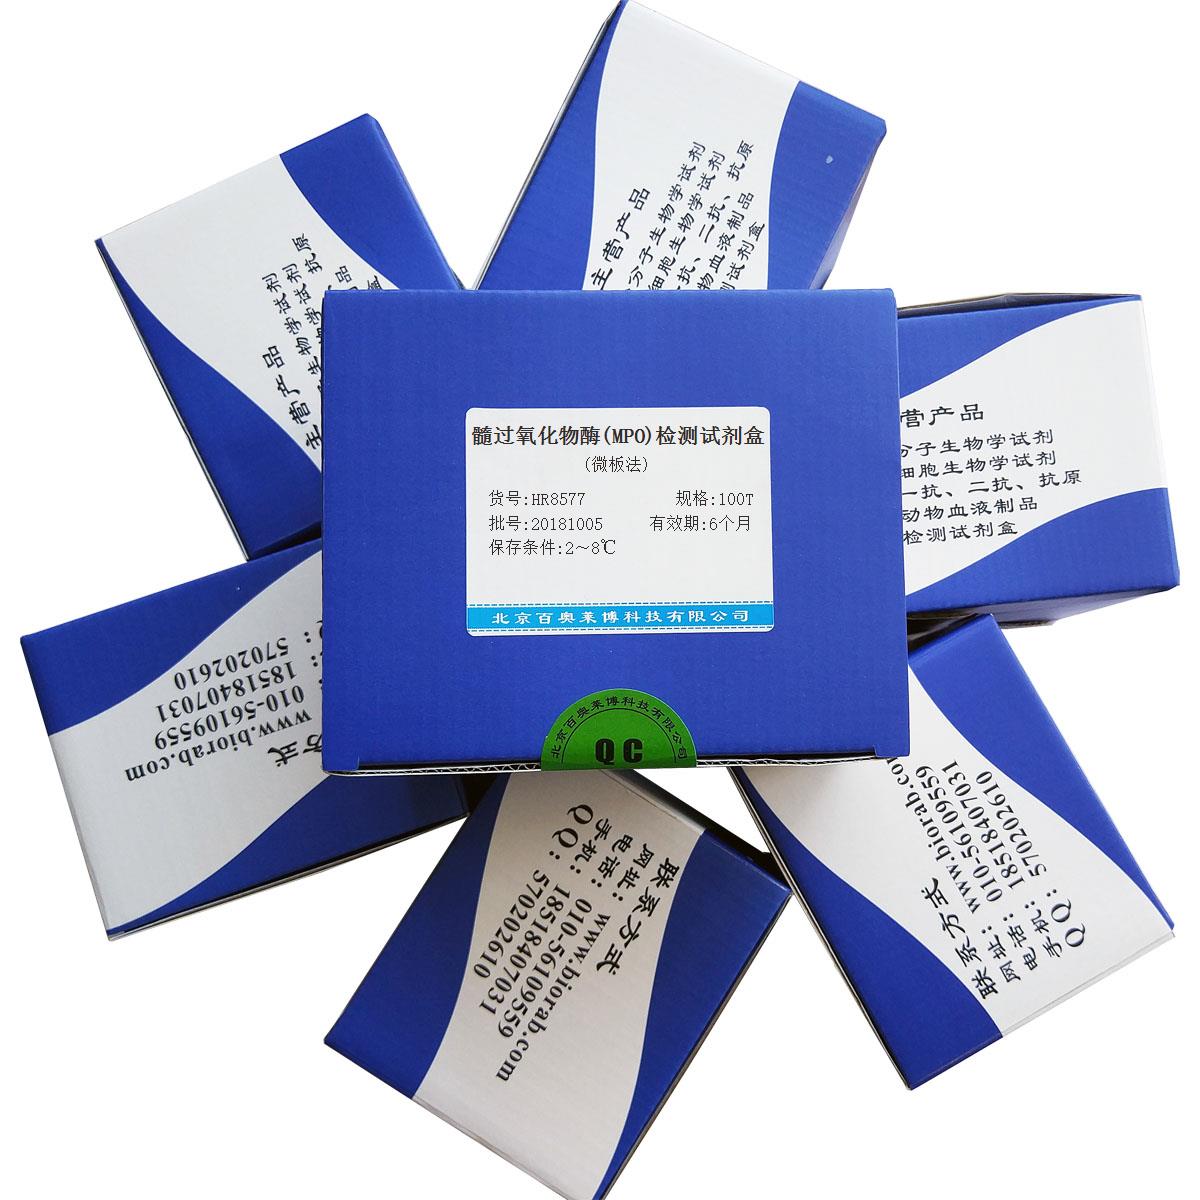 髓过氧化物酶(MPO)检测试剂盒(微板法)